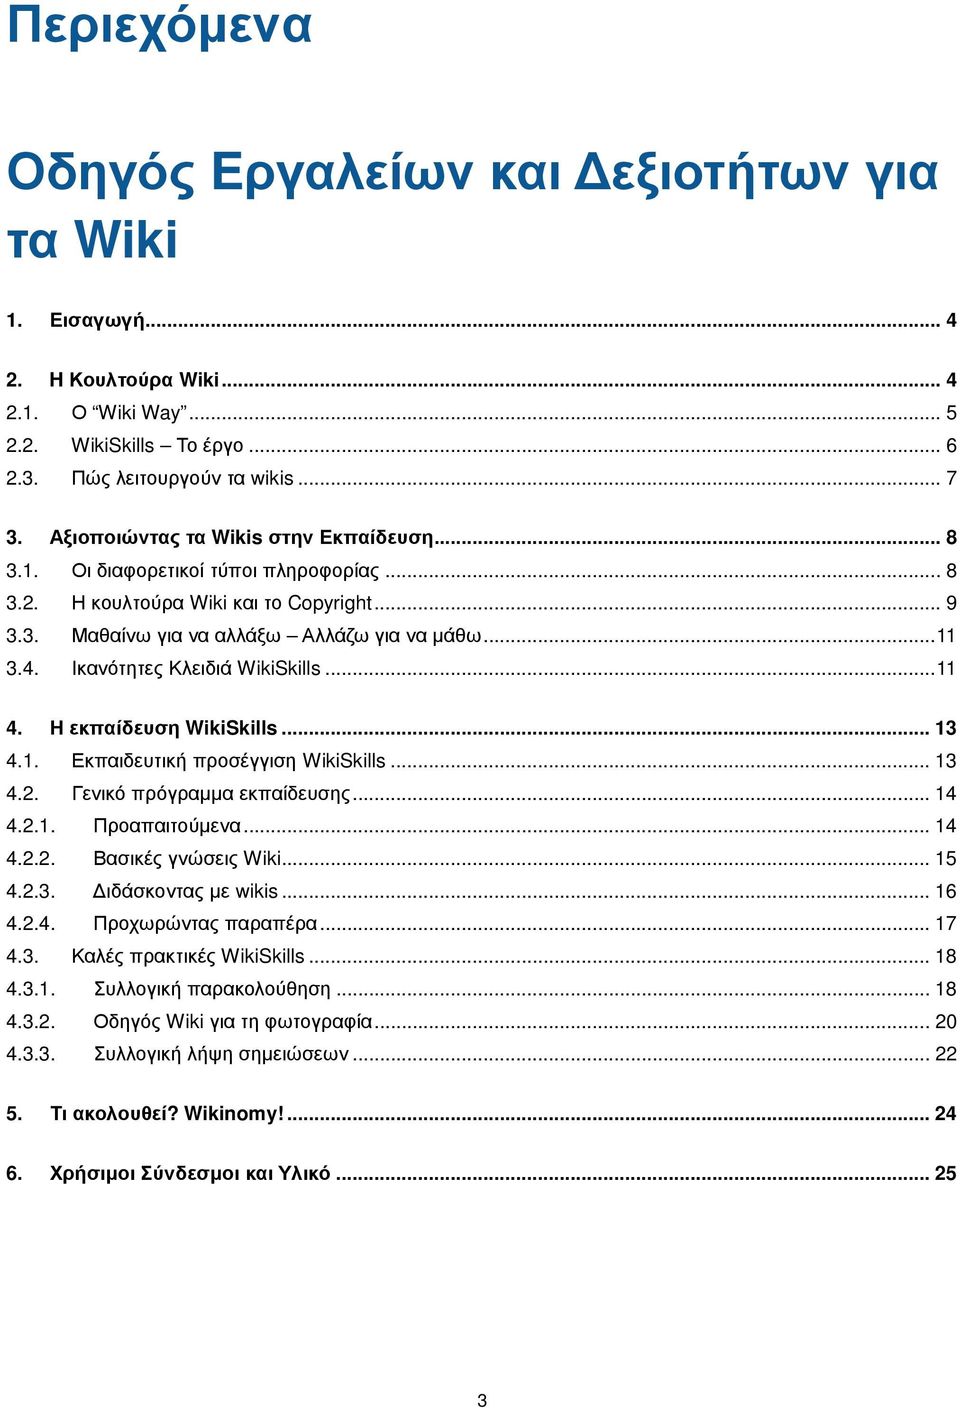 Ικανότητες Κλειδιά WikiSkills... 11 4. Η εκπαίδευση WikiSkills... 13 4.1. Εκπαιδευτική προσέγγιση WikiSkills... 13 4.2. Γενικό πρόγραμμα εκπαίδευσης... 14 4.2.1. Προαπαιτούμενα... 14 4.2.2. Βασικές γνώσεις Wiki.